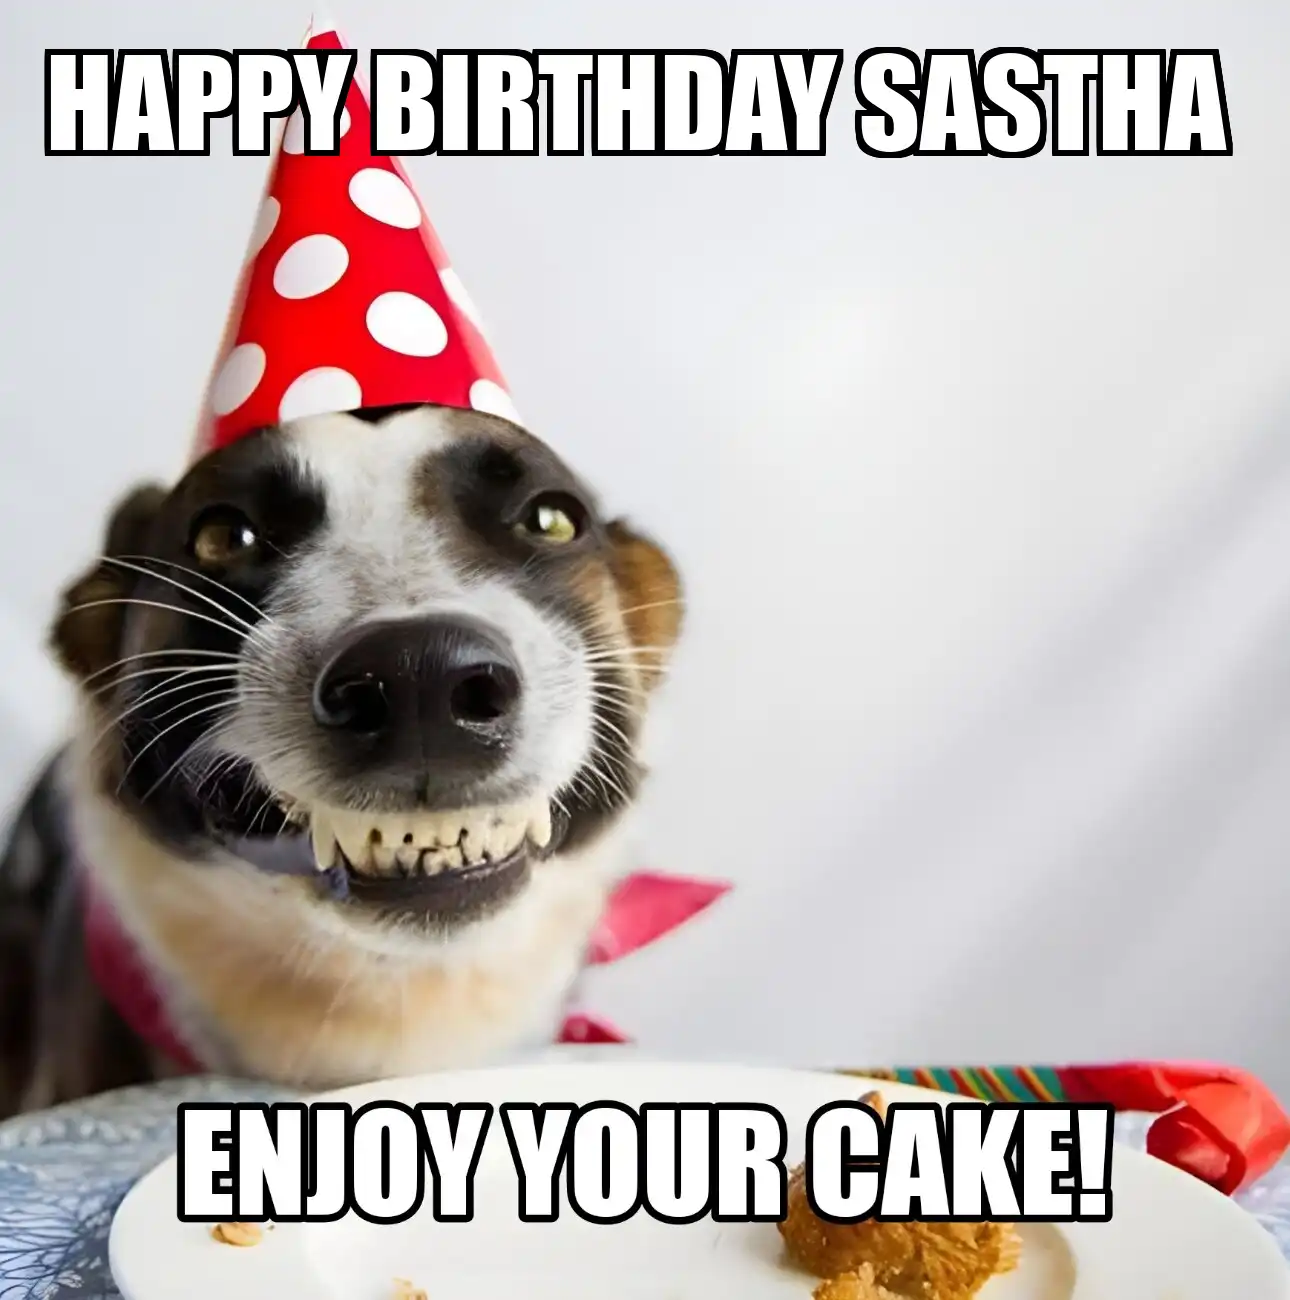 Happy Birthday Sastha Enjoy Your Cake Dog Meme